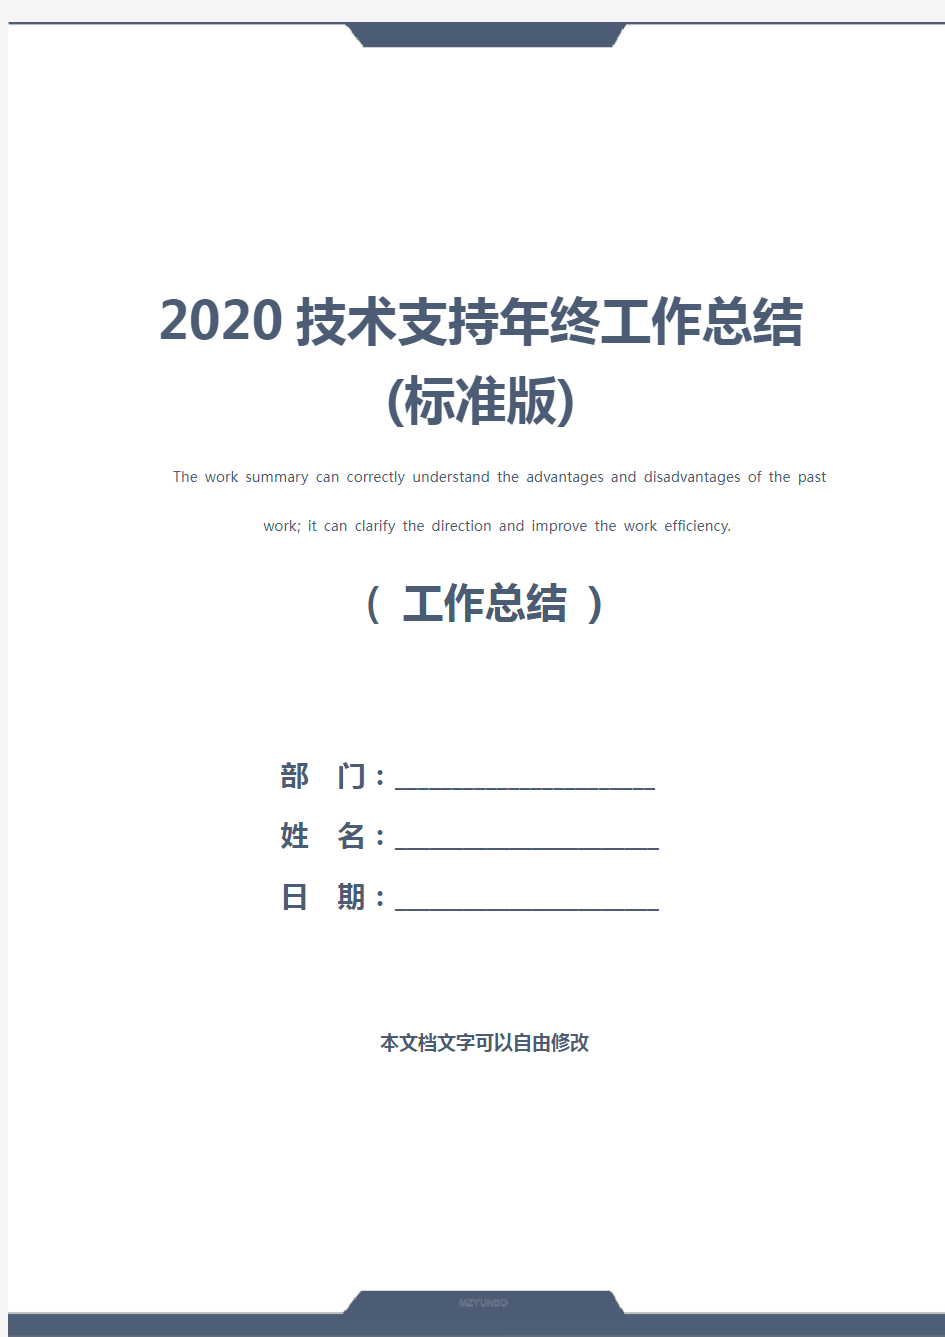 2020技术支持年终工作总结(标准版)